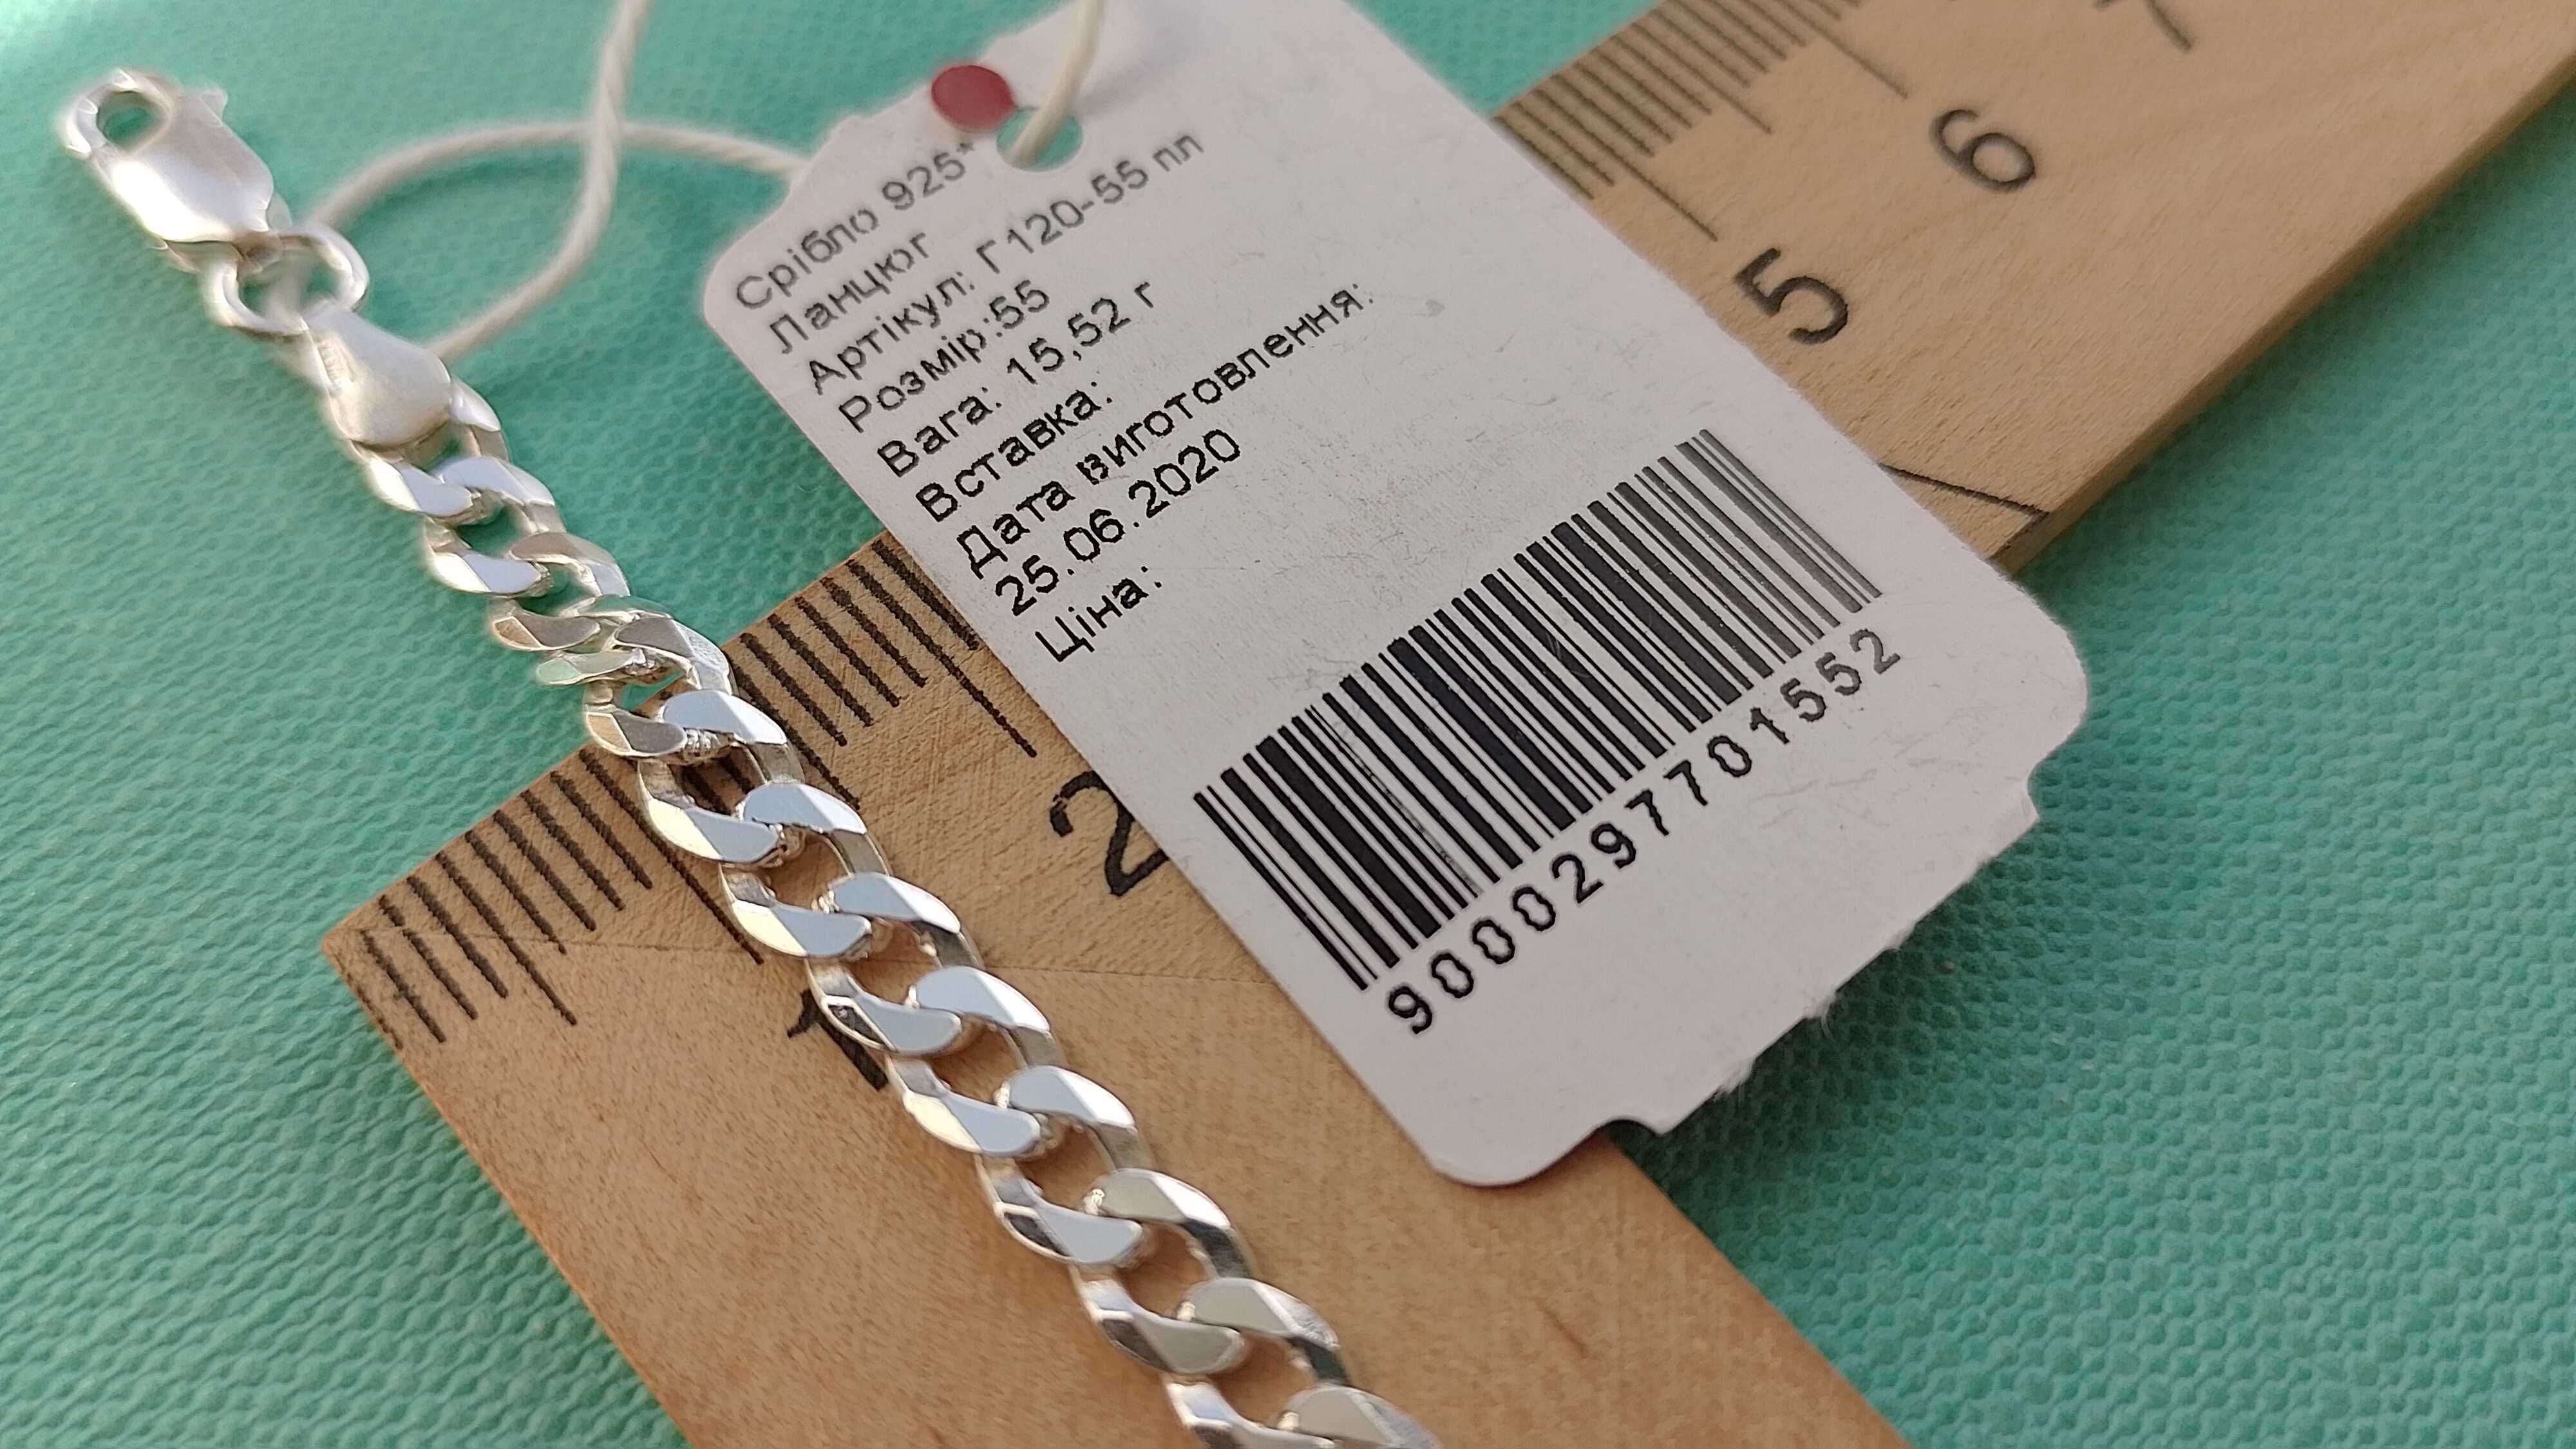 Серебряная цепочка 55 60 см цепь Картье Гурмет панцирное плетение